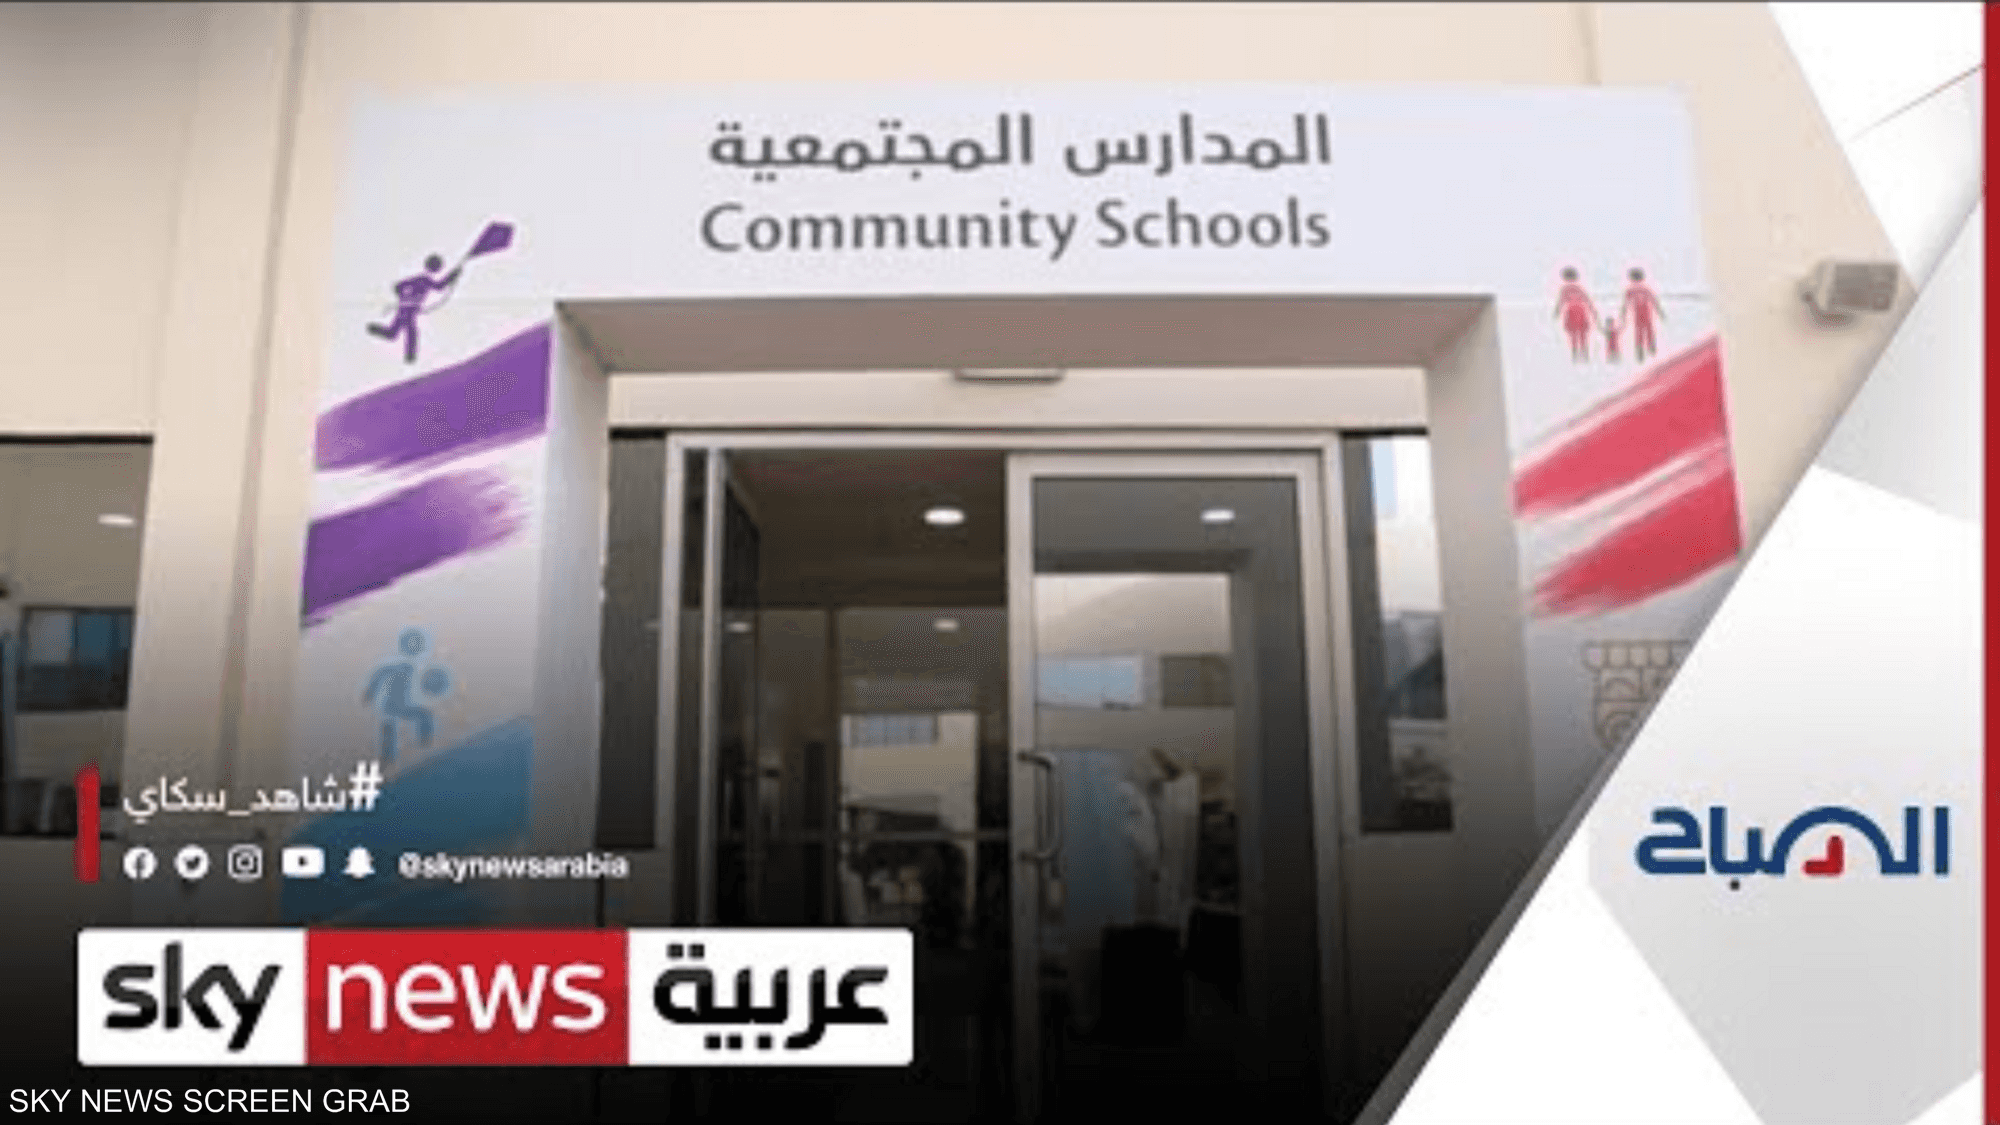 المدارس المجتمعية في مصر تساعد على بناء شخصية الطفل